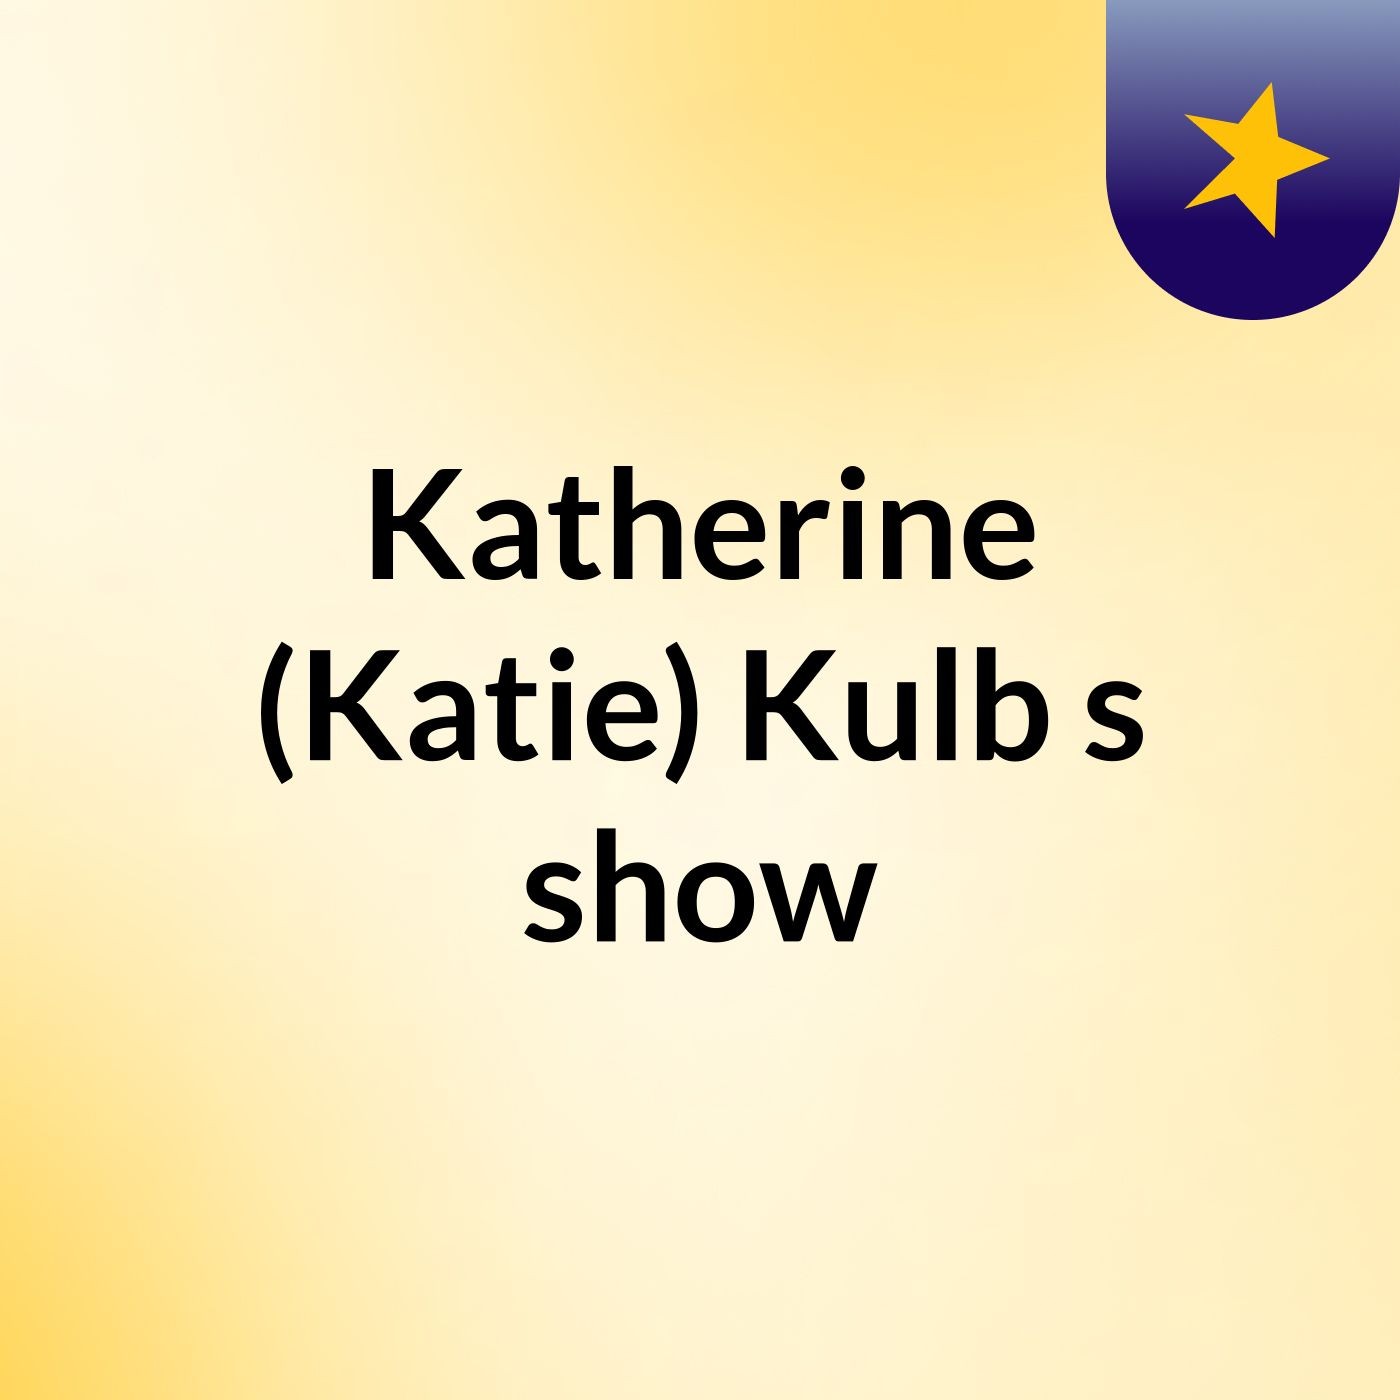 Katherine (Katie) Kulb's show